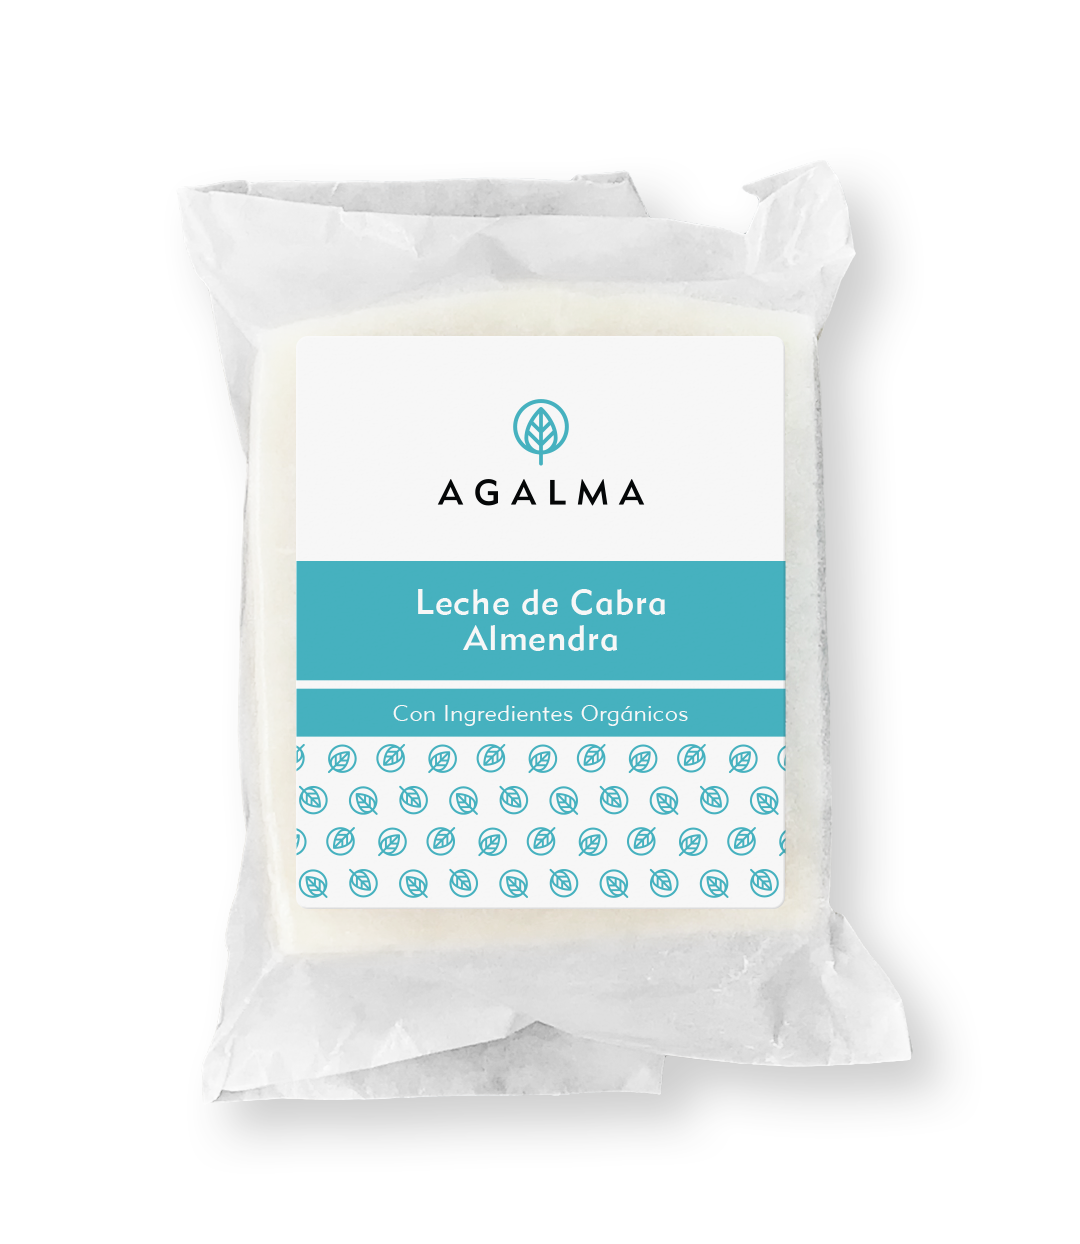 Jabón Leche de Cabra y Almendra Agalma Natural ..:: Productos naturales para el cuidado del cabello y la piel, elaborados a mano en Santiago, y Santo Domingo, República Dominicana ::..